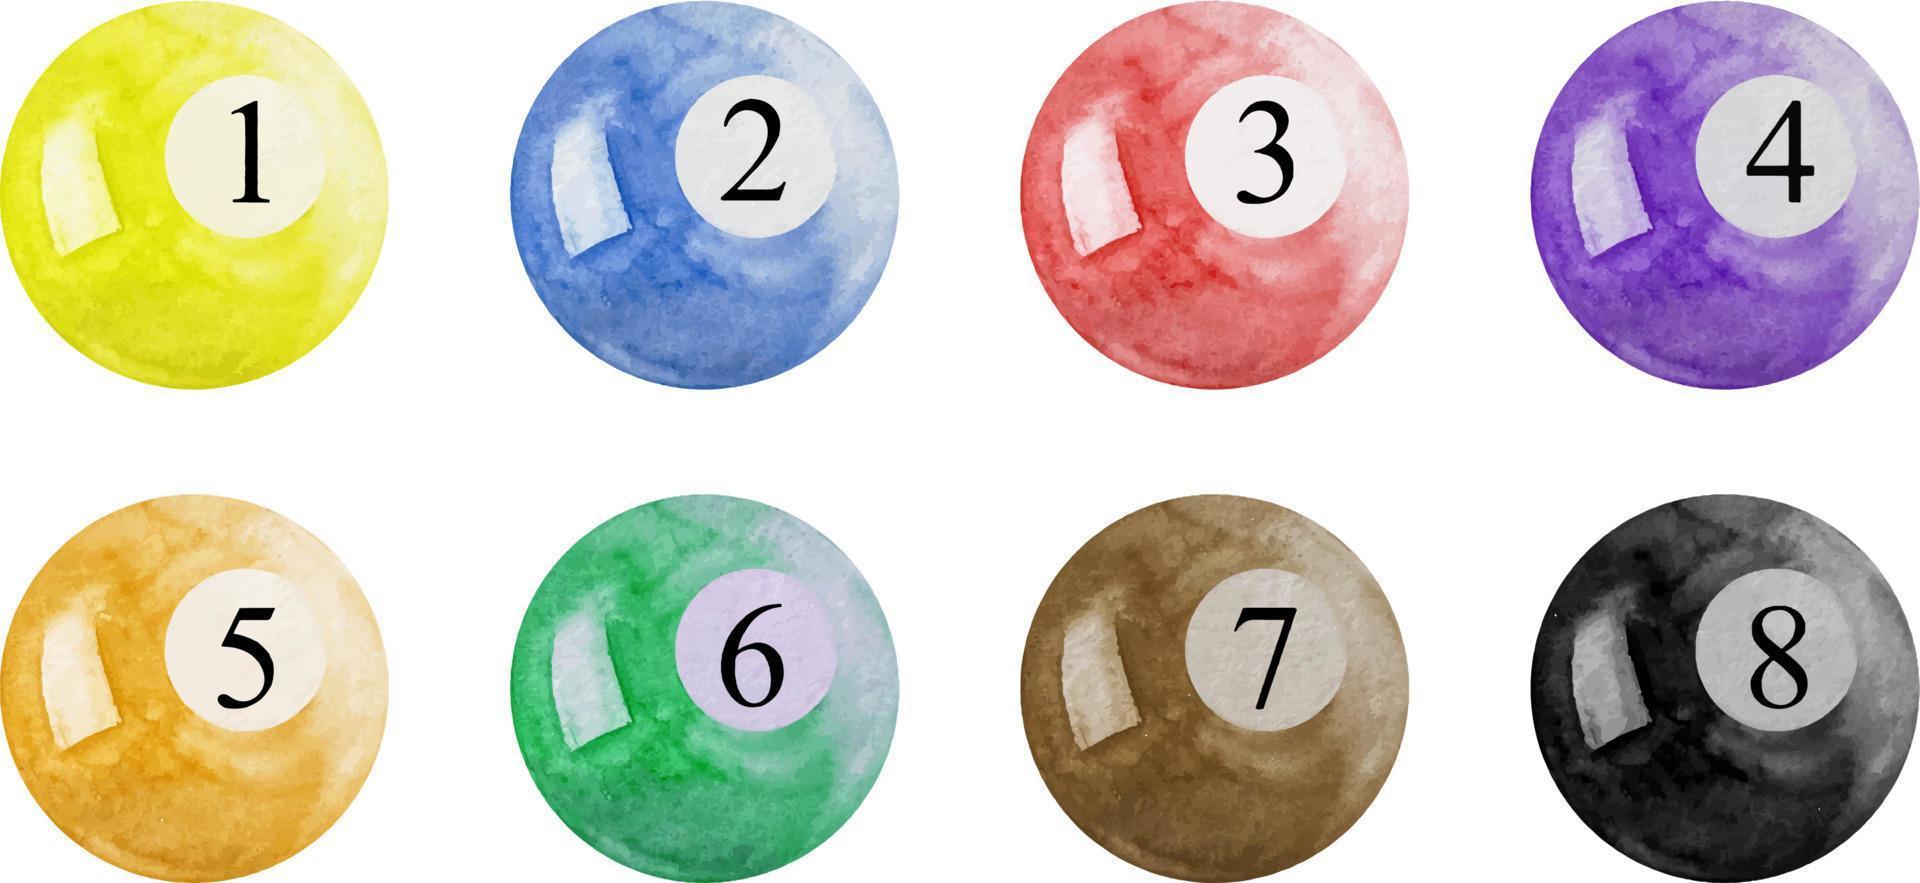 waterverf gekleurde zwembad ballen. biljart ballen getallen 1 naar 8 vector